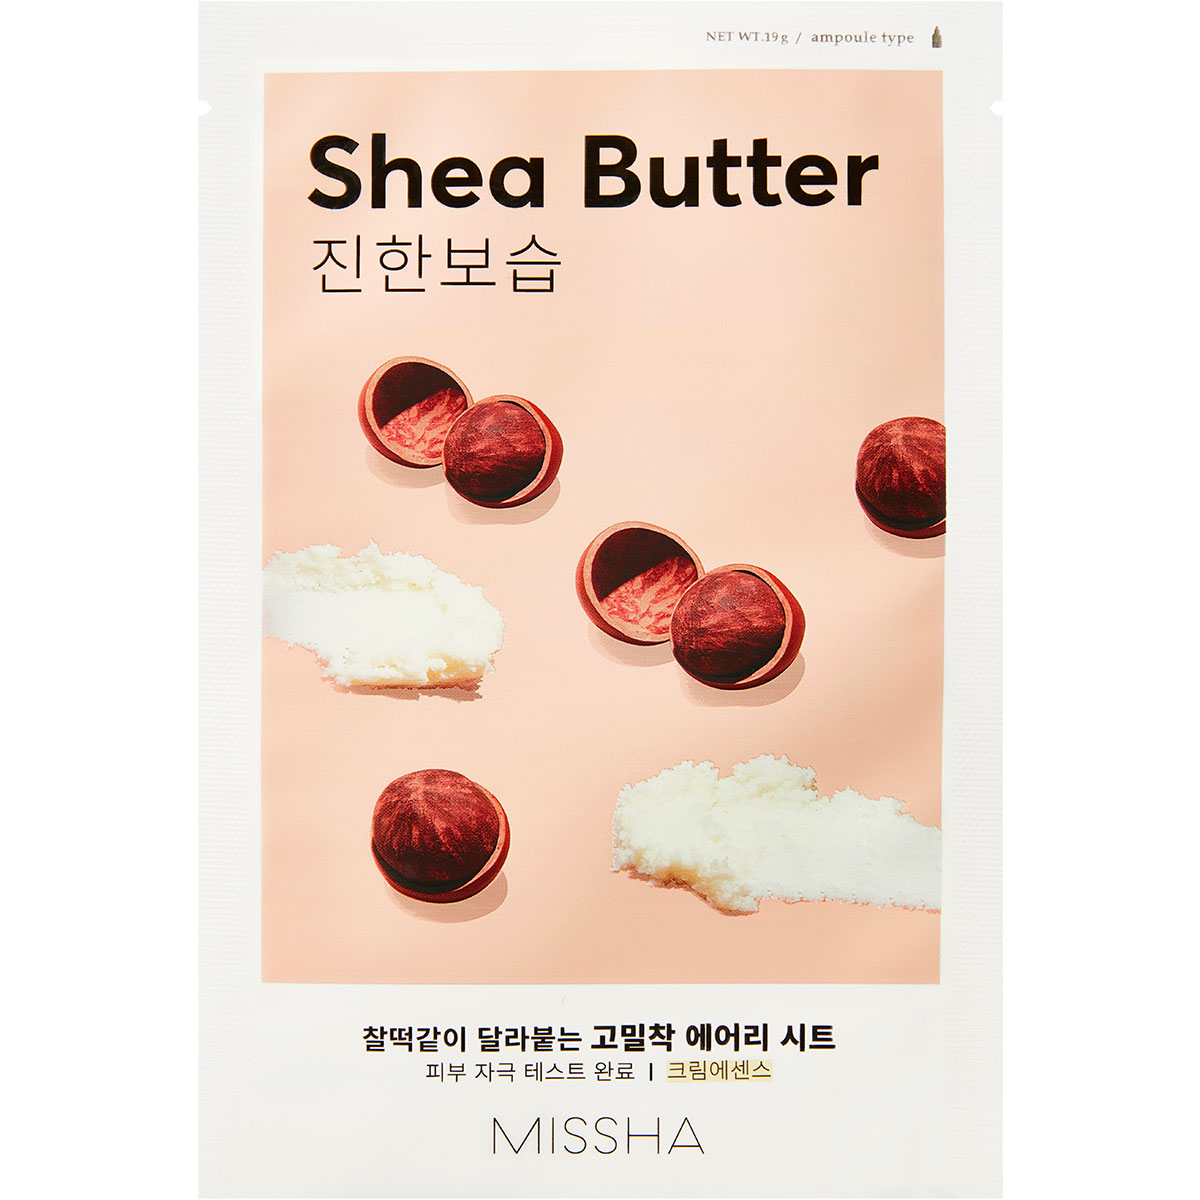 Airy Fit Sheet Mask (Shea Butter), 19 g MISSHA Body Butter test